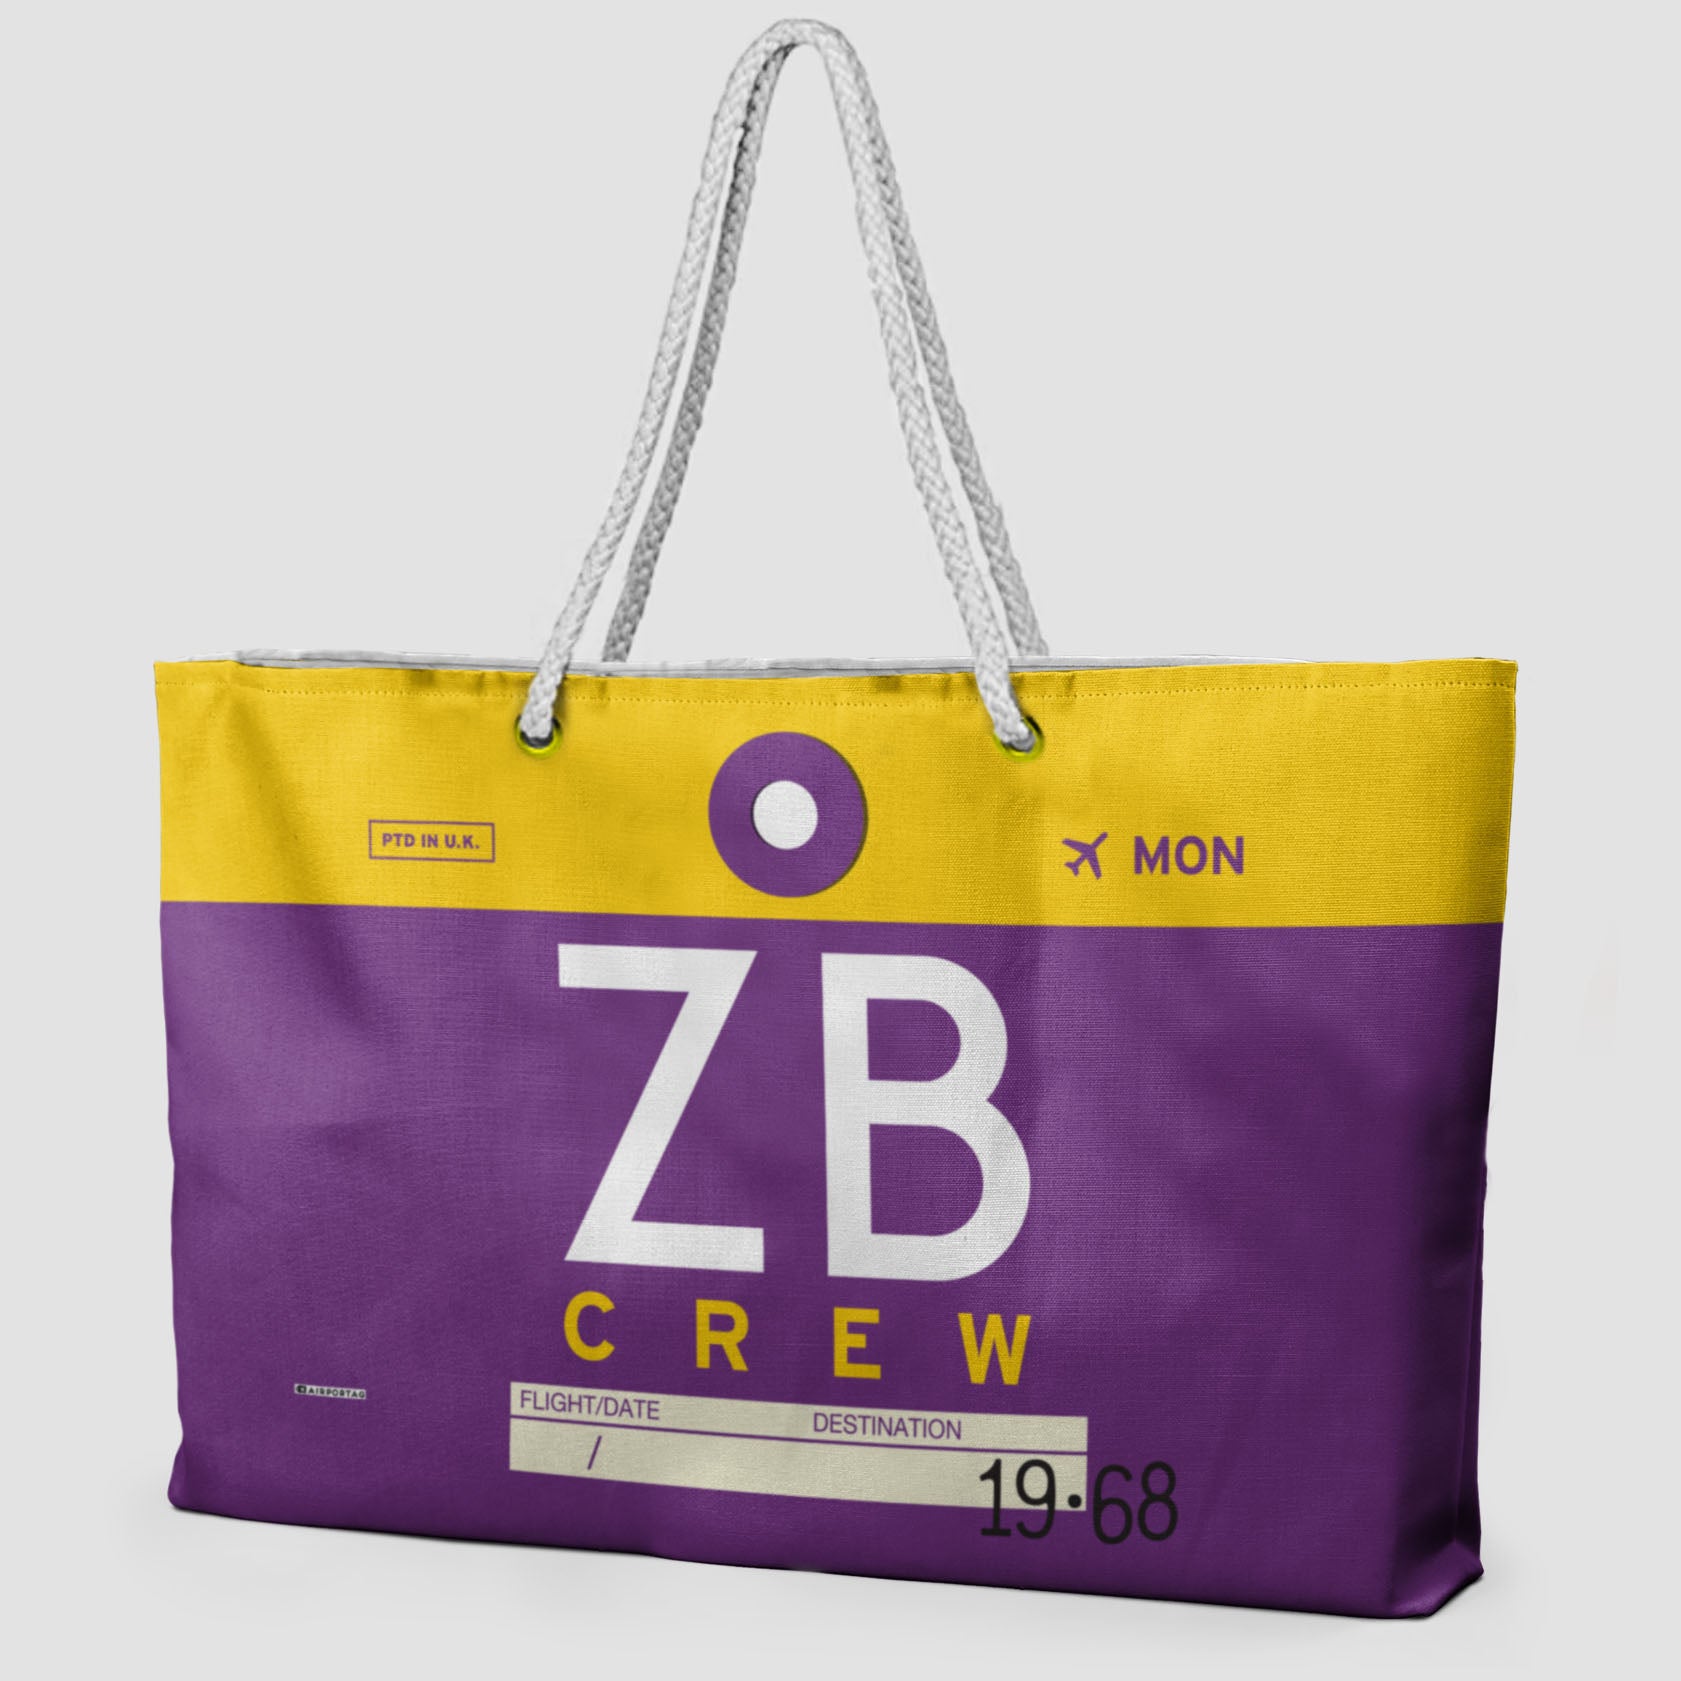 ZB - Weekender Bag - Airportag